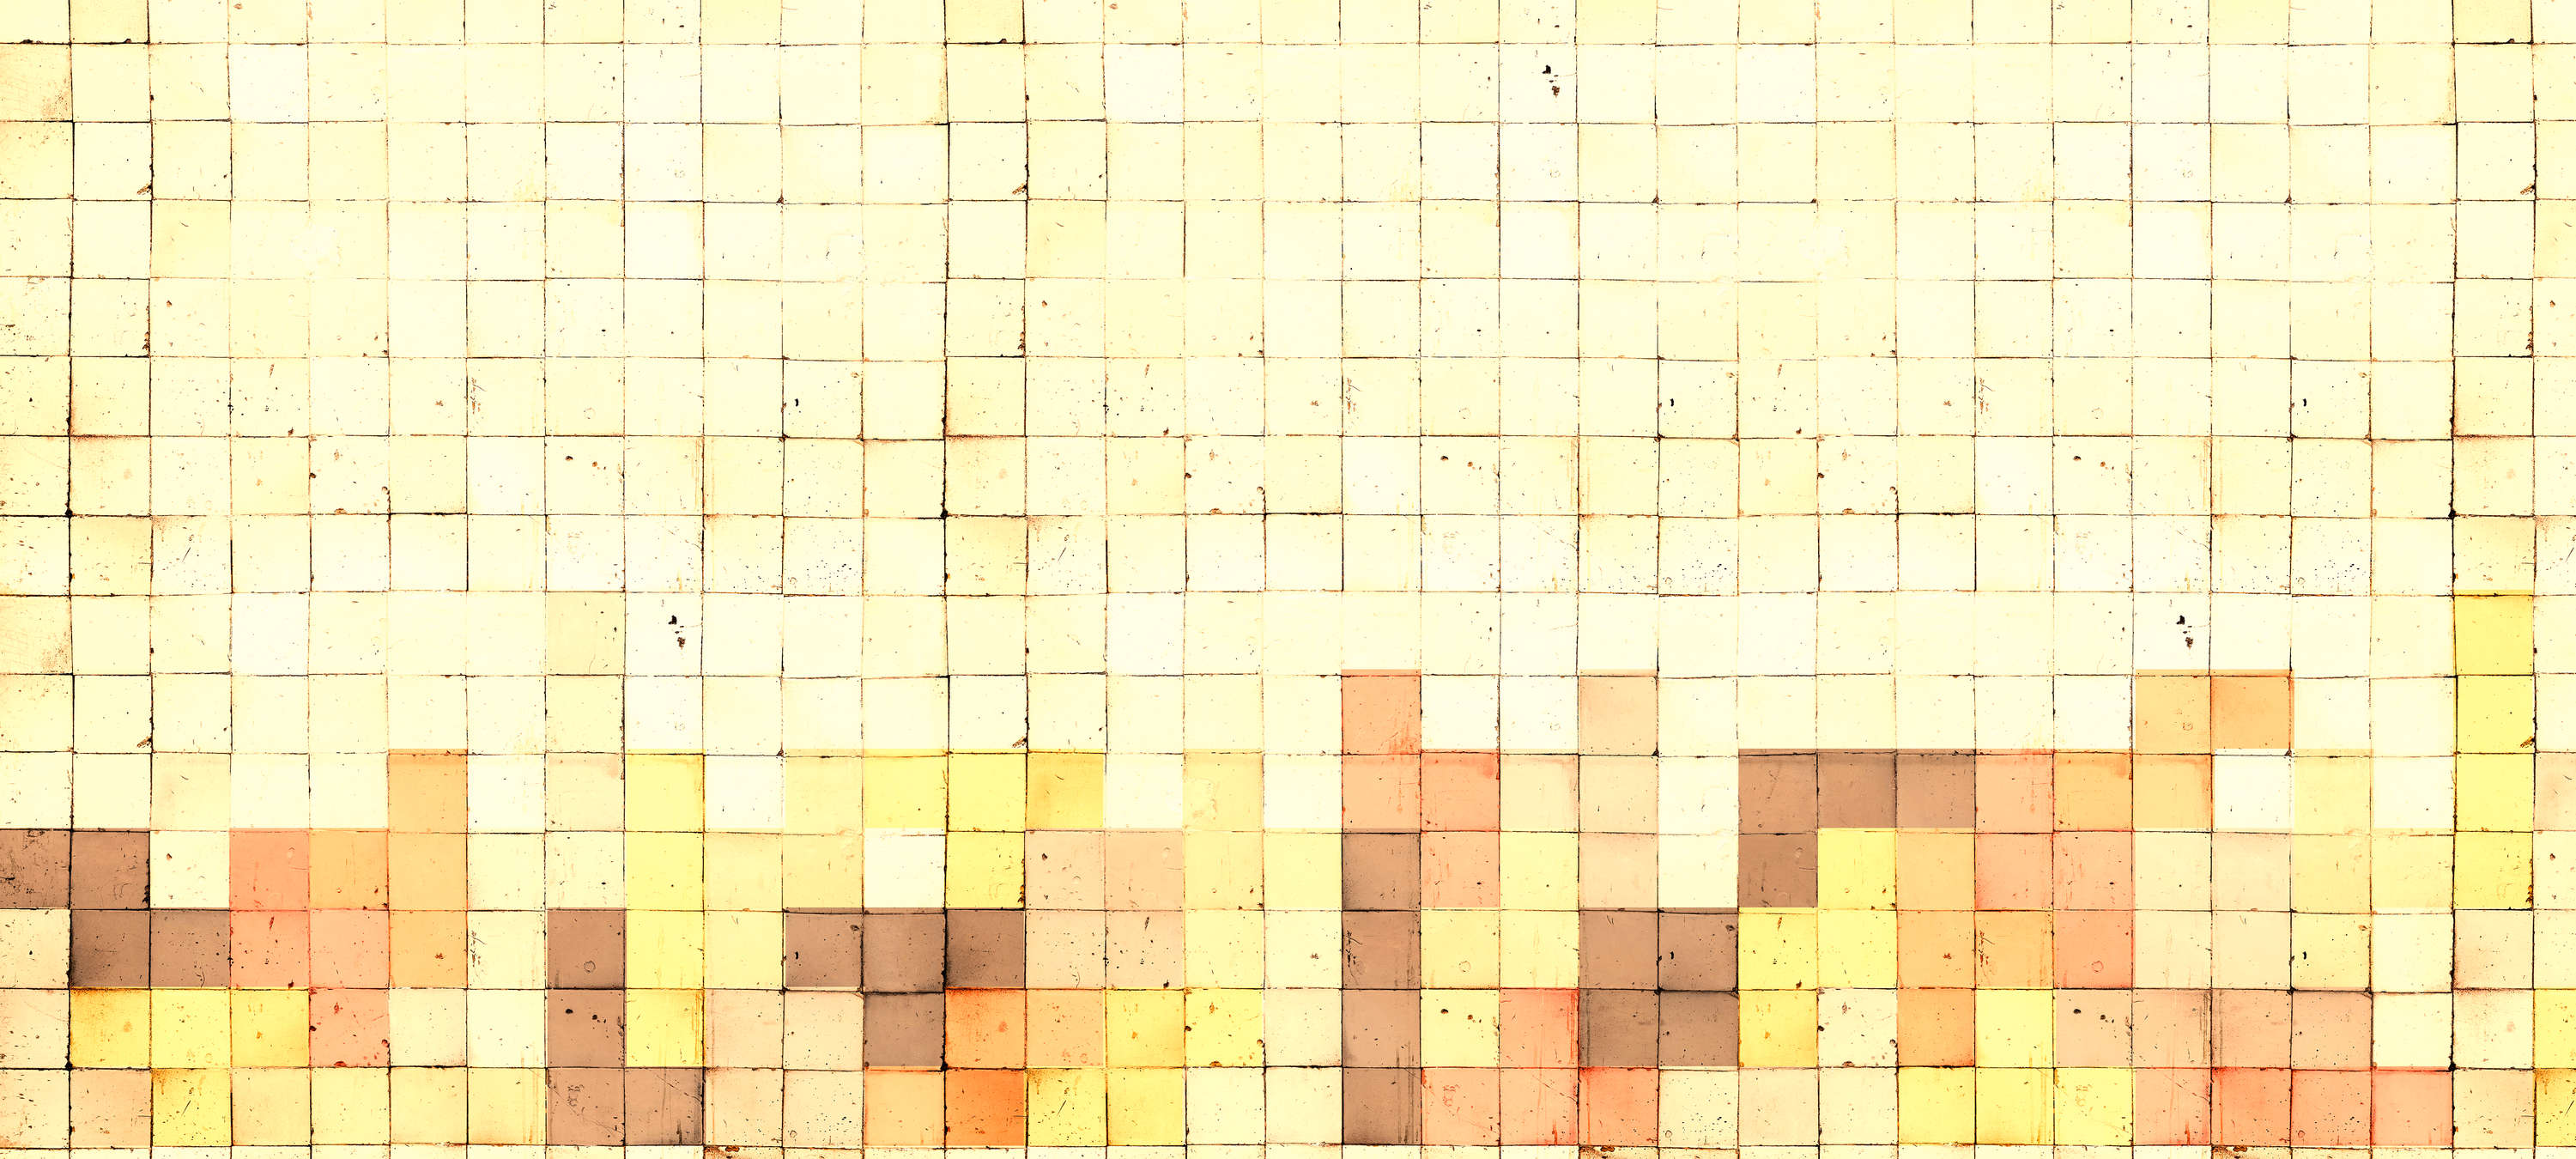             Fotomurali 3D stile Tetris, mosaico di cemento - Giallo, arancione, marrone
        